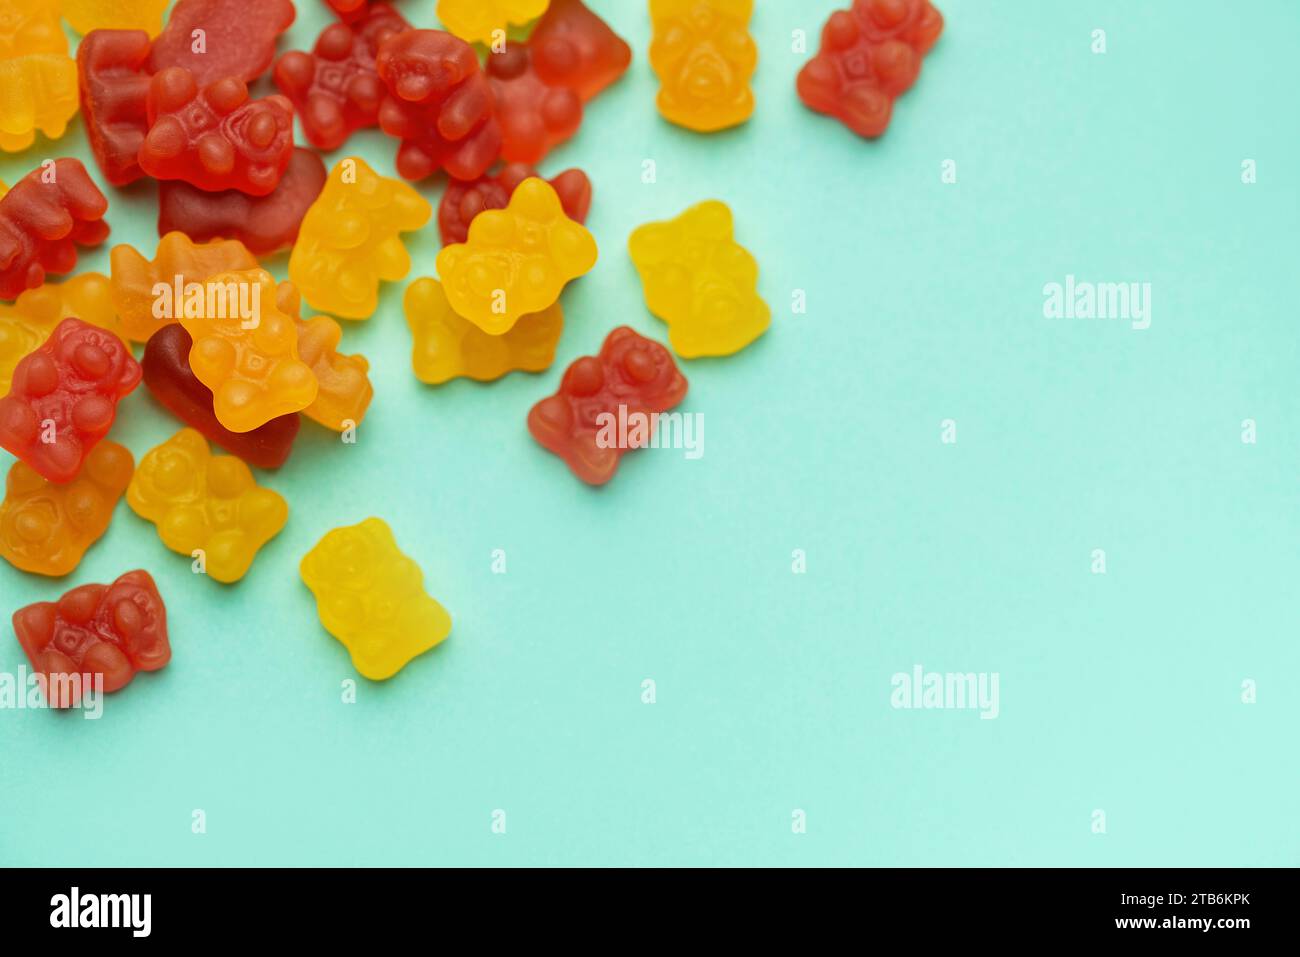 Vitamines pour les enfants, gelée gommeuse porte des bonbons sur fond vert pastel Banque D'Images